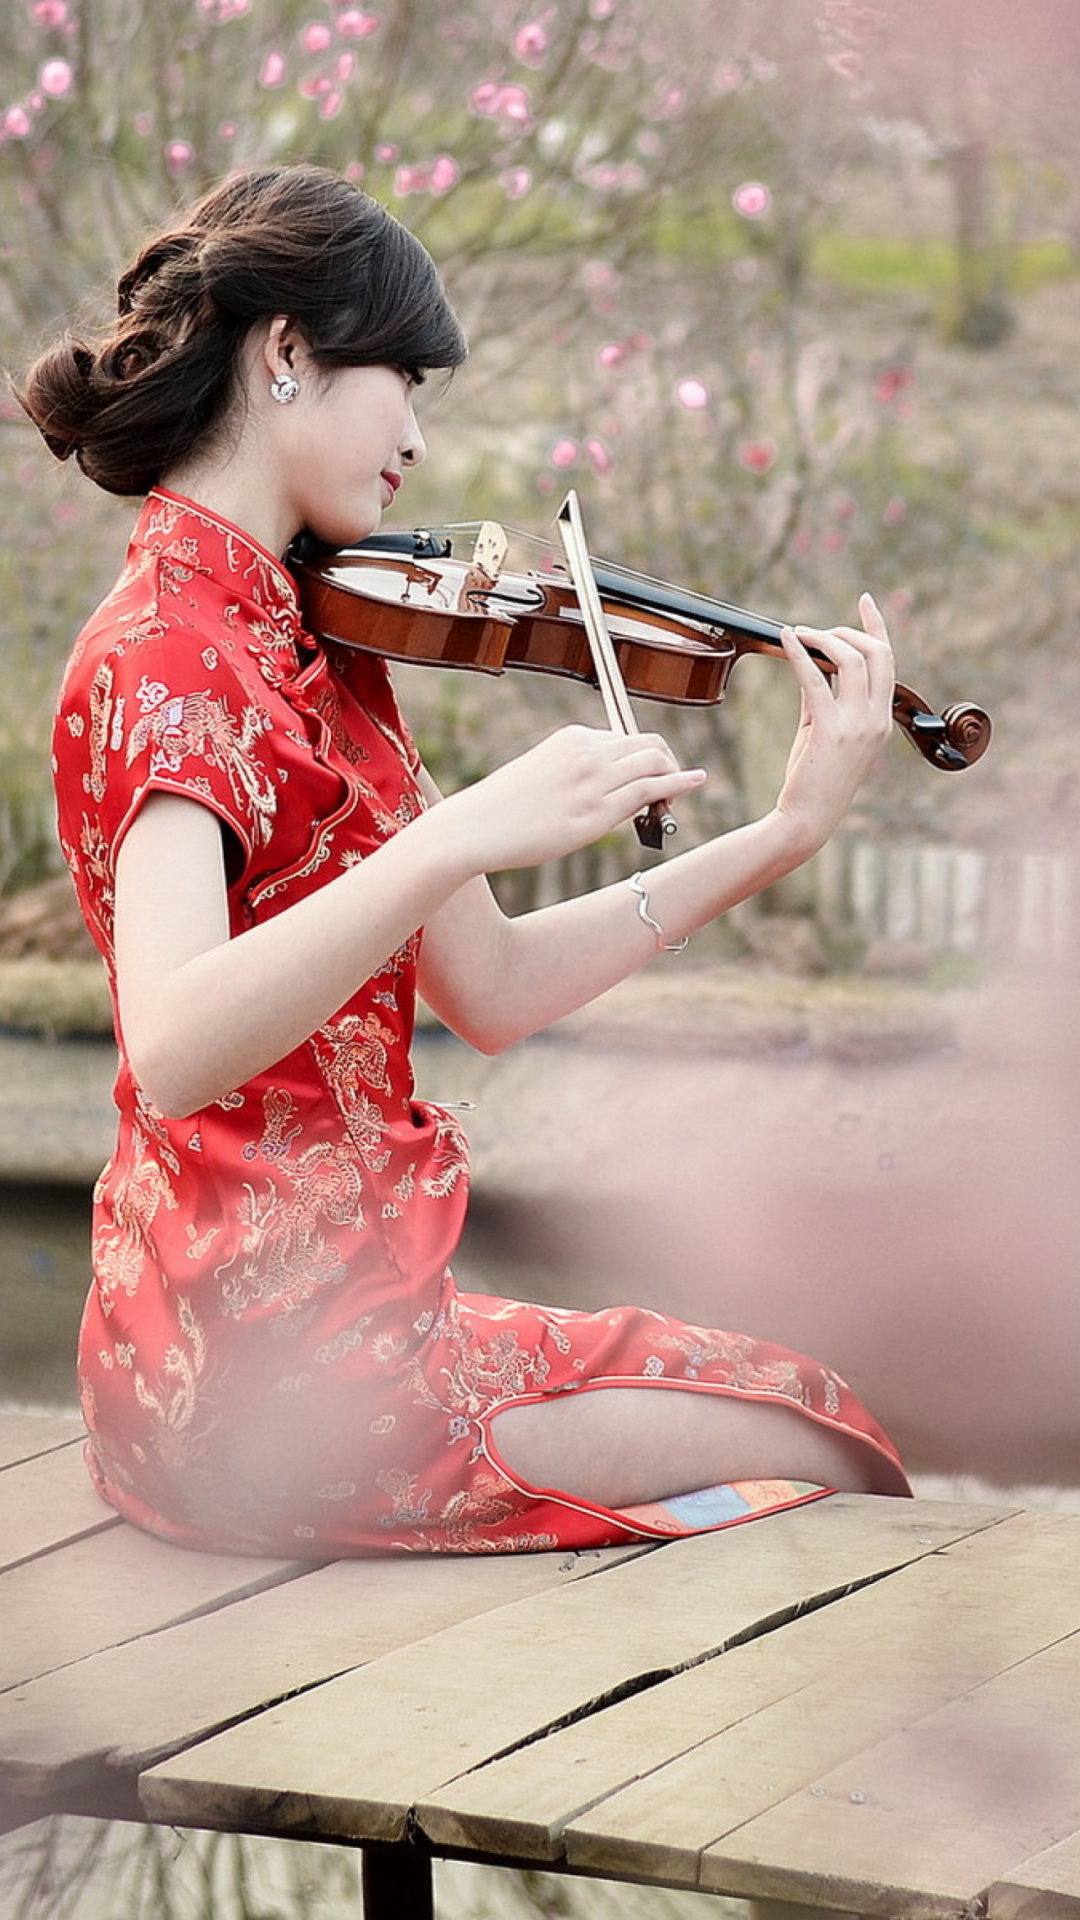 Das Pretty Asian Girl Violinist Wallpaper 1080x1920